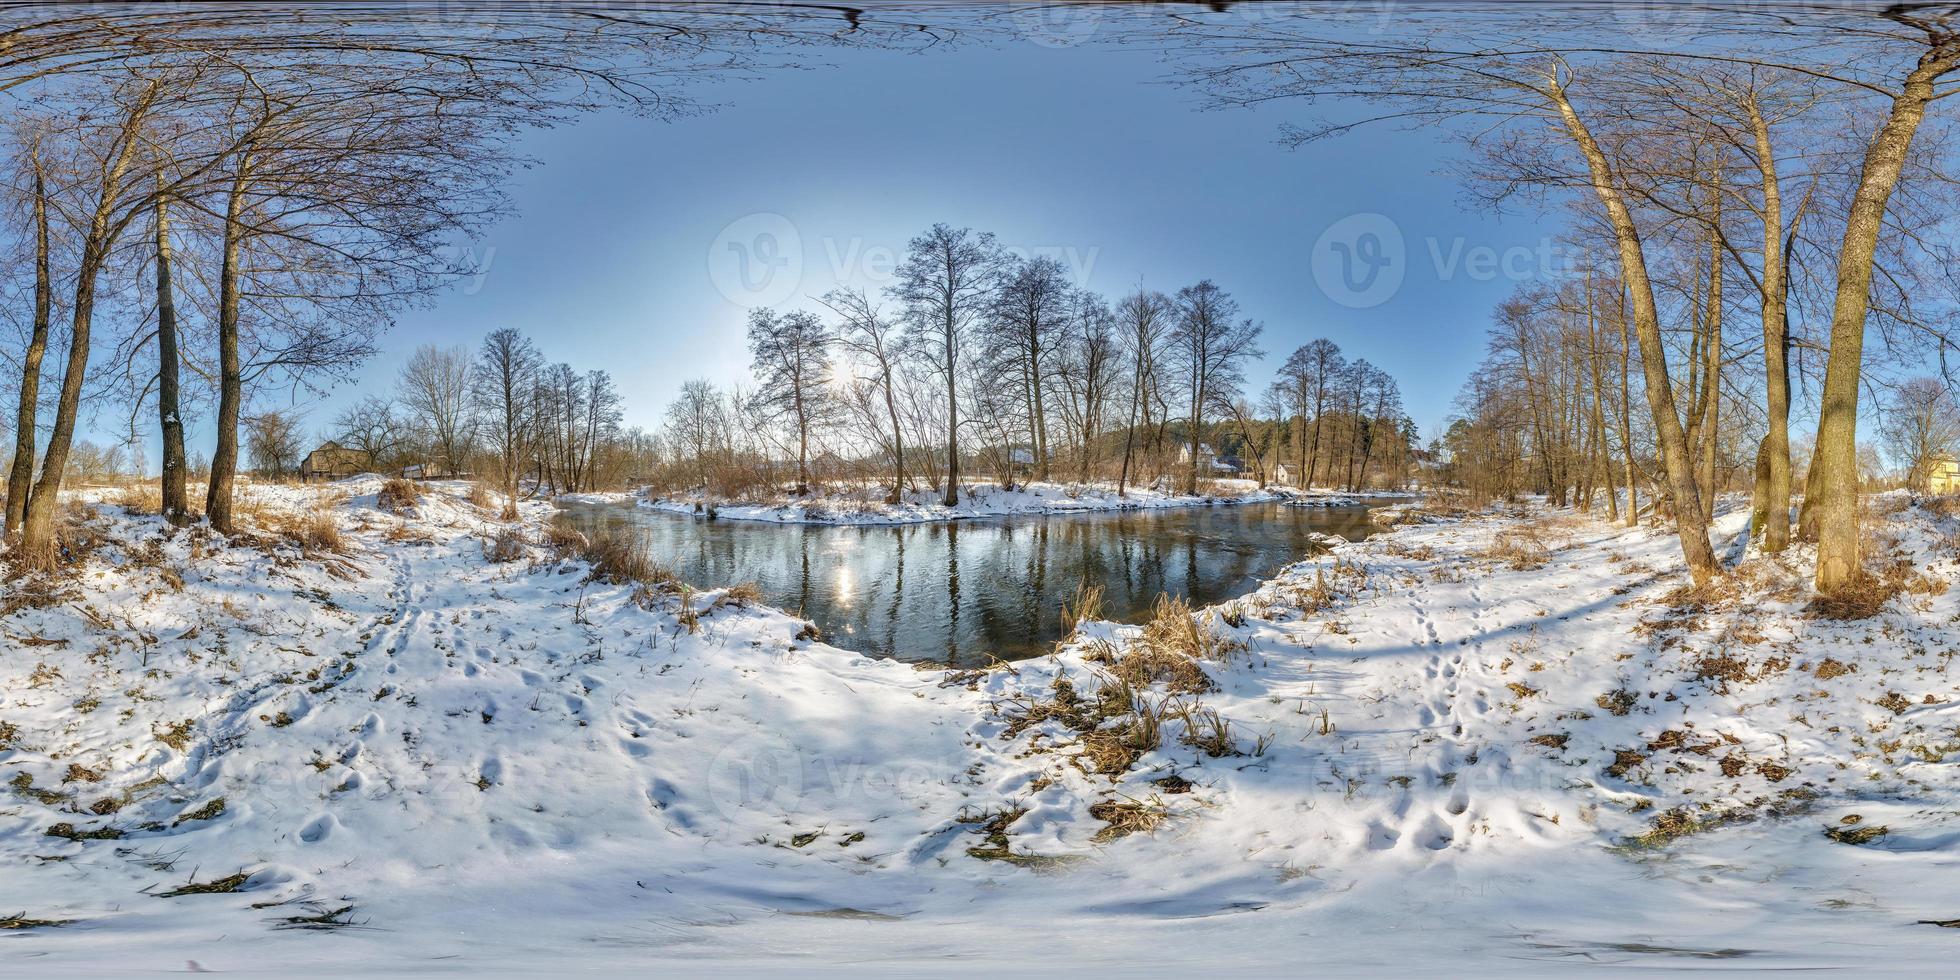 panorama esférico sem costura completo vista de ângulo de 360 por 180 graus perto de um rio estreito e rápido em uma noite ensolarada de inverno em projeção equirretangular, skybox vr ar conteúdo de realidade virtual foto